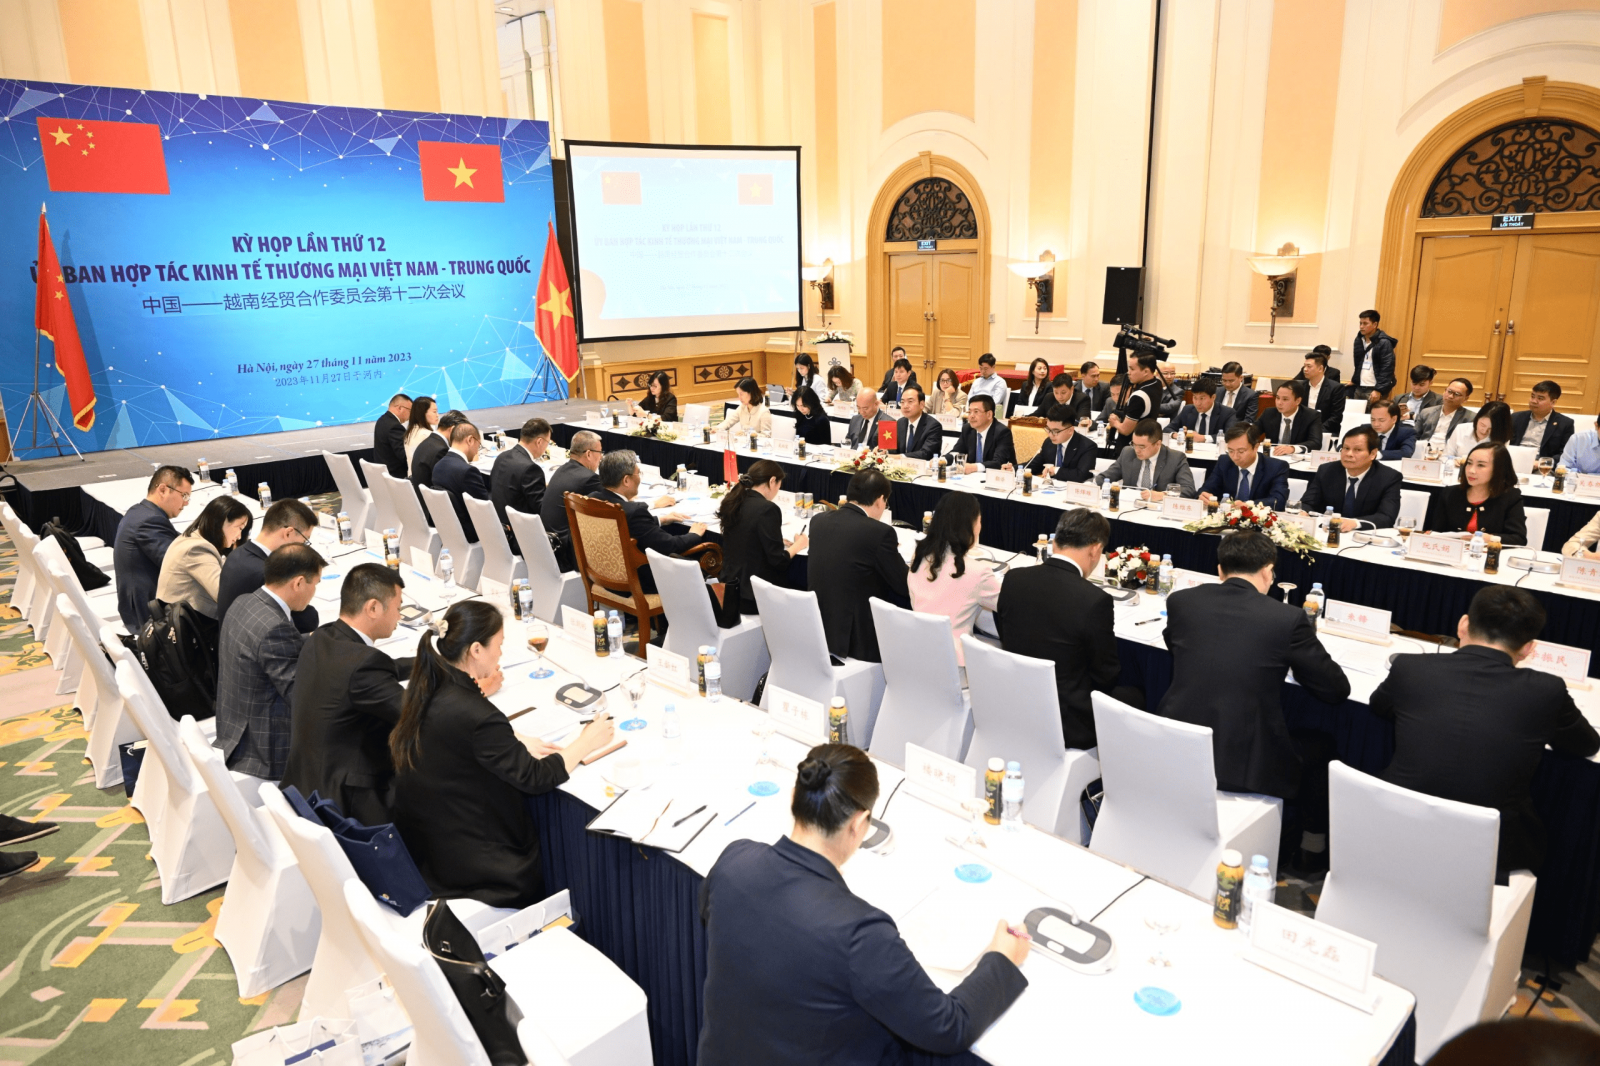  Kỳ họp lần thứ 12 Ủy ban hợp tác kinh tế, thương mại Việt Nam – Trung Quốc